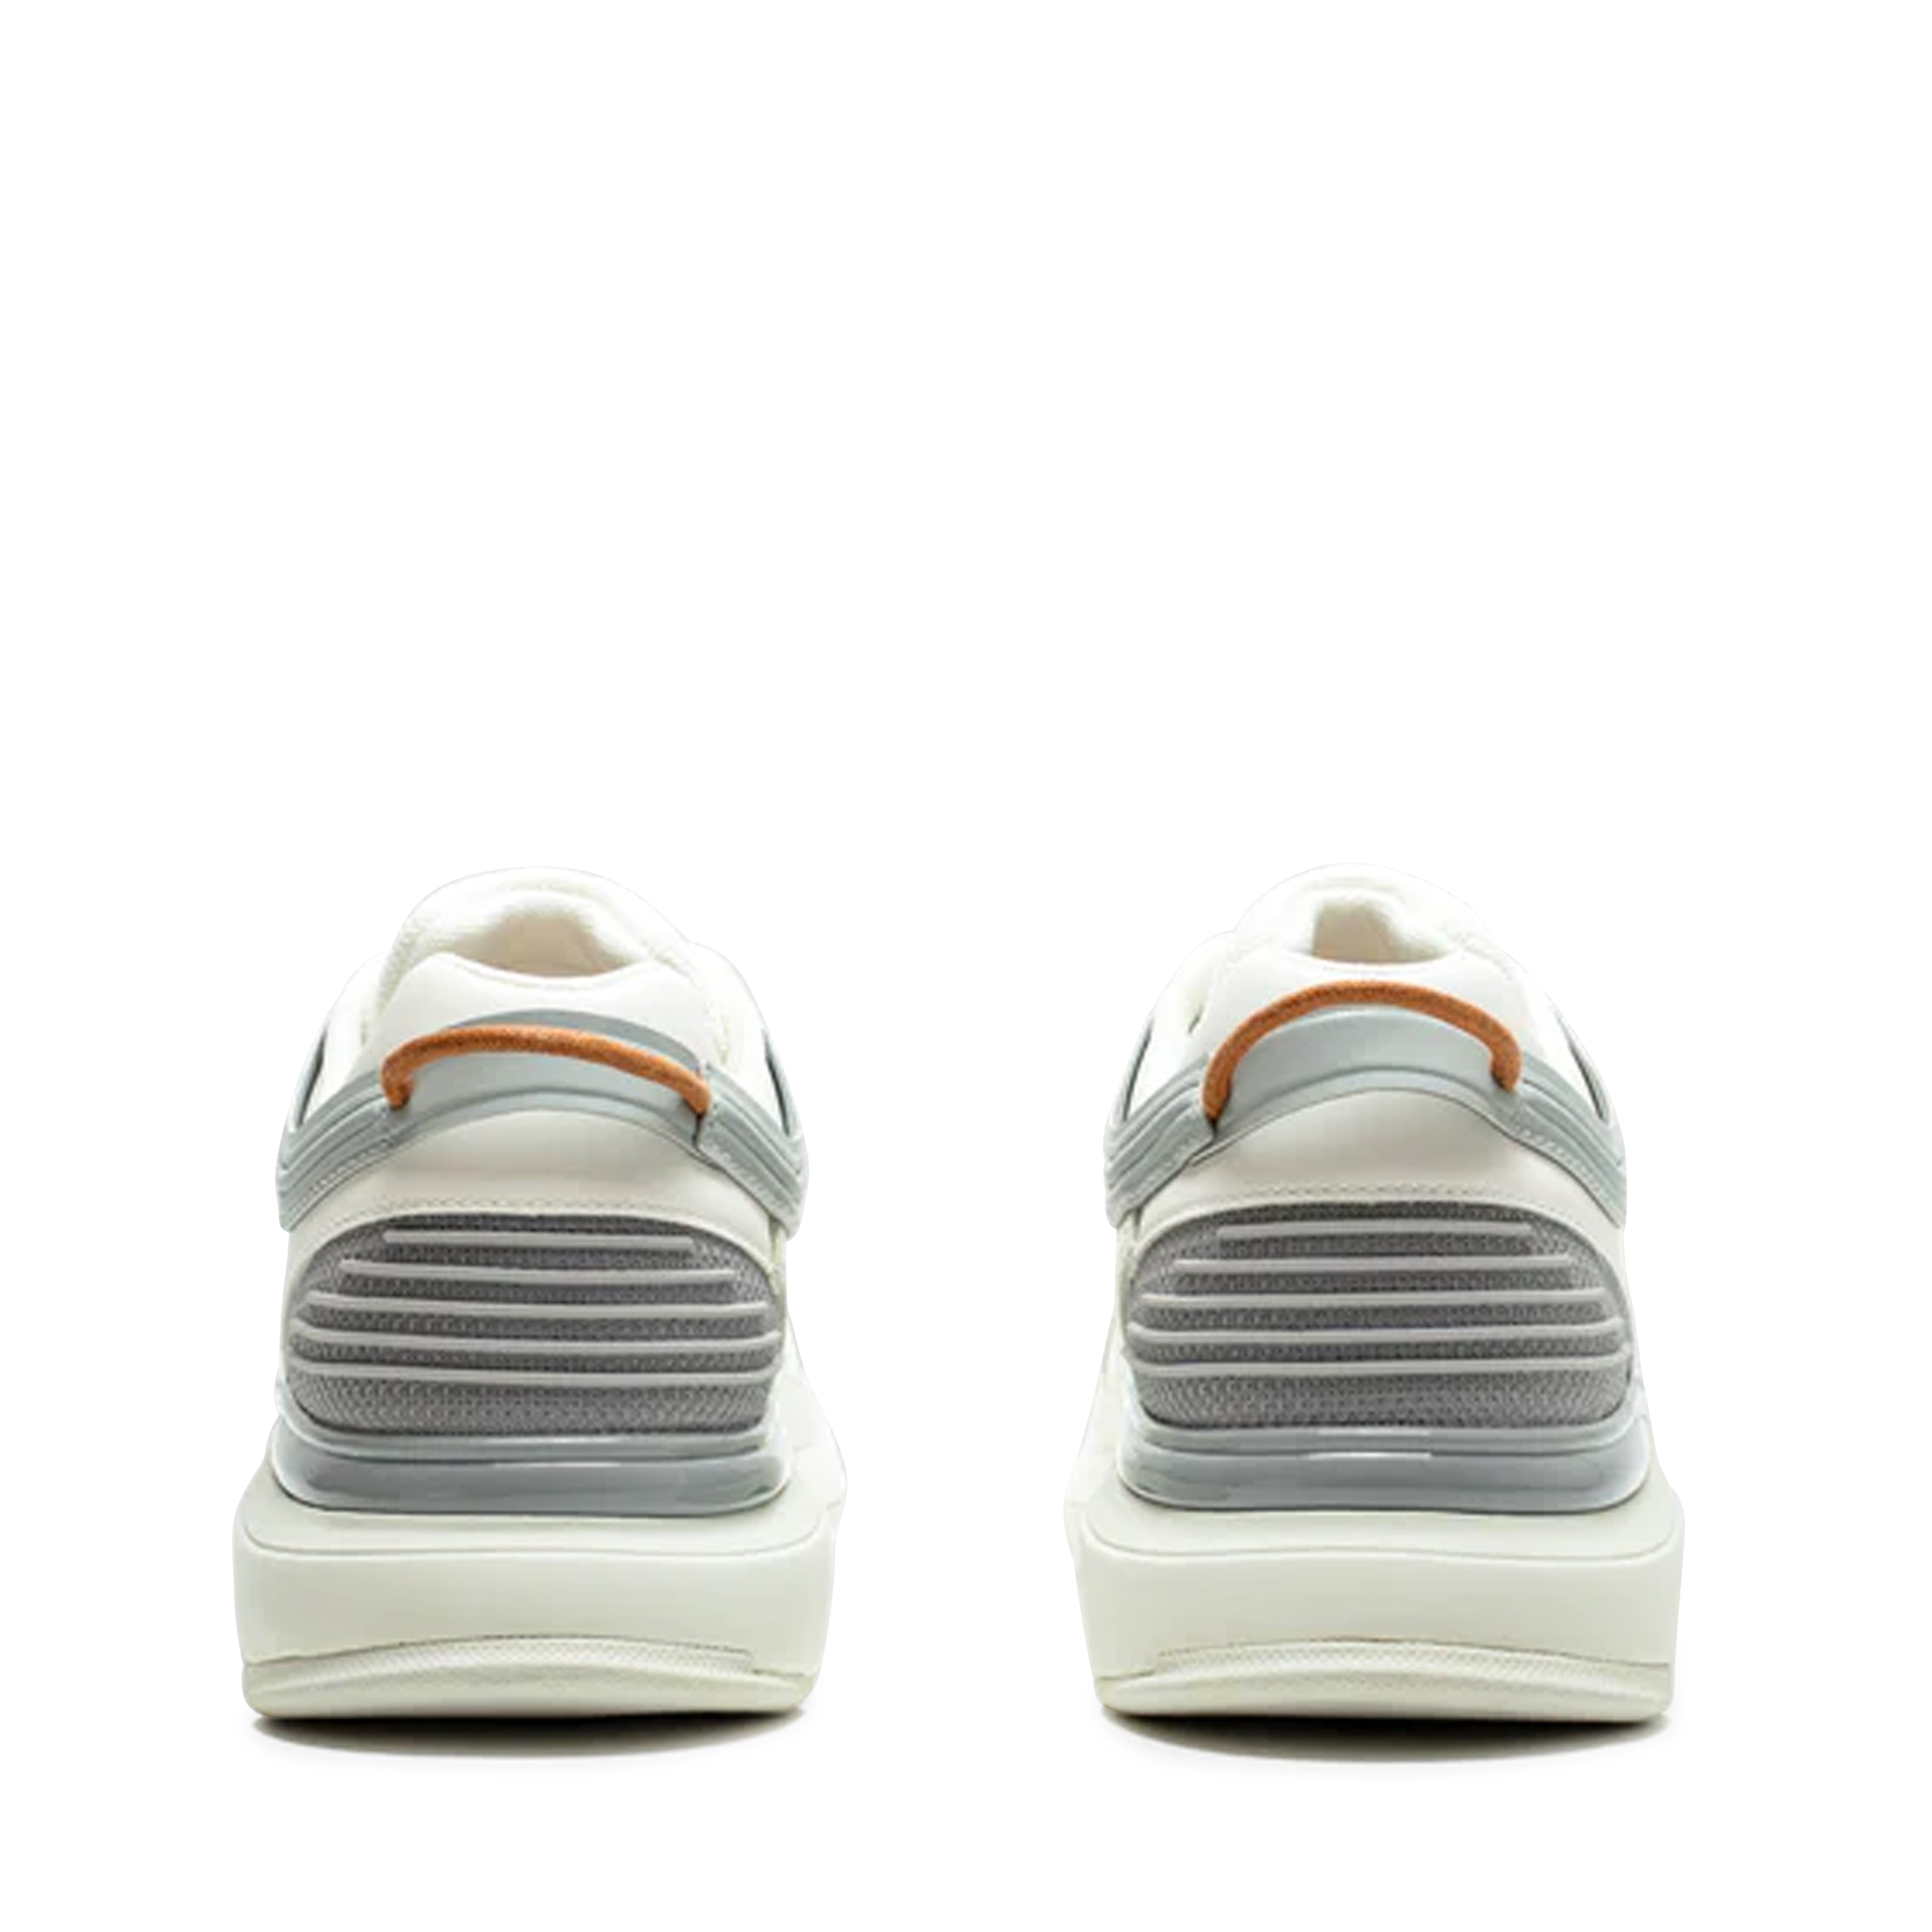 Athletics Footwear - One.2 - (Formal Grey)